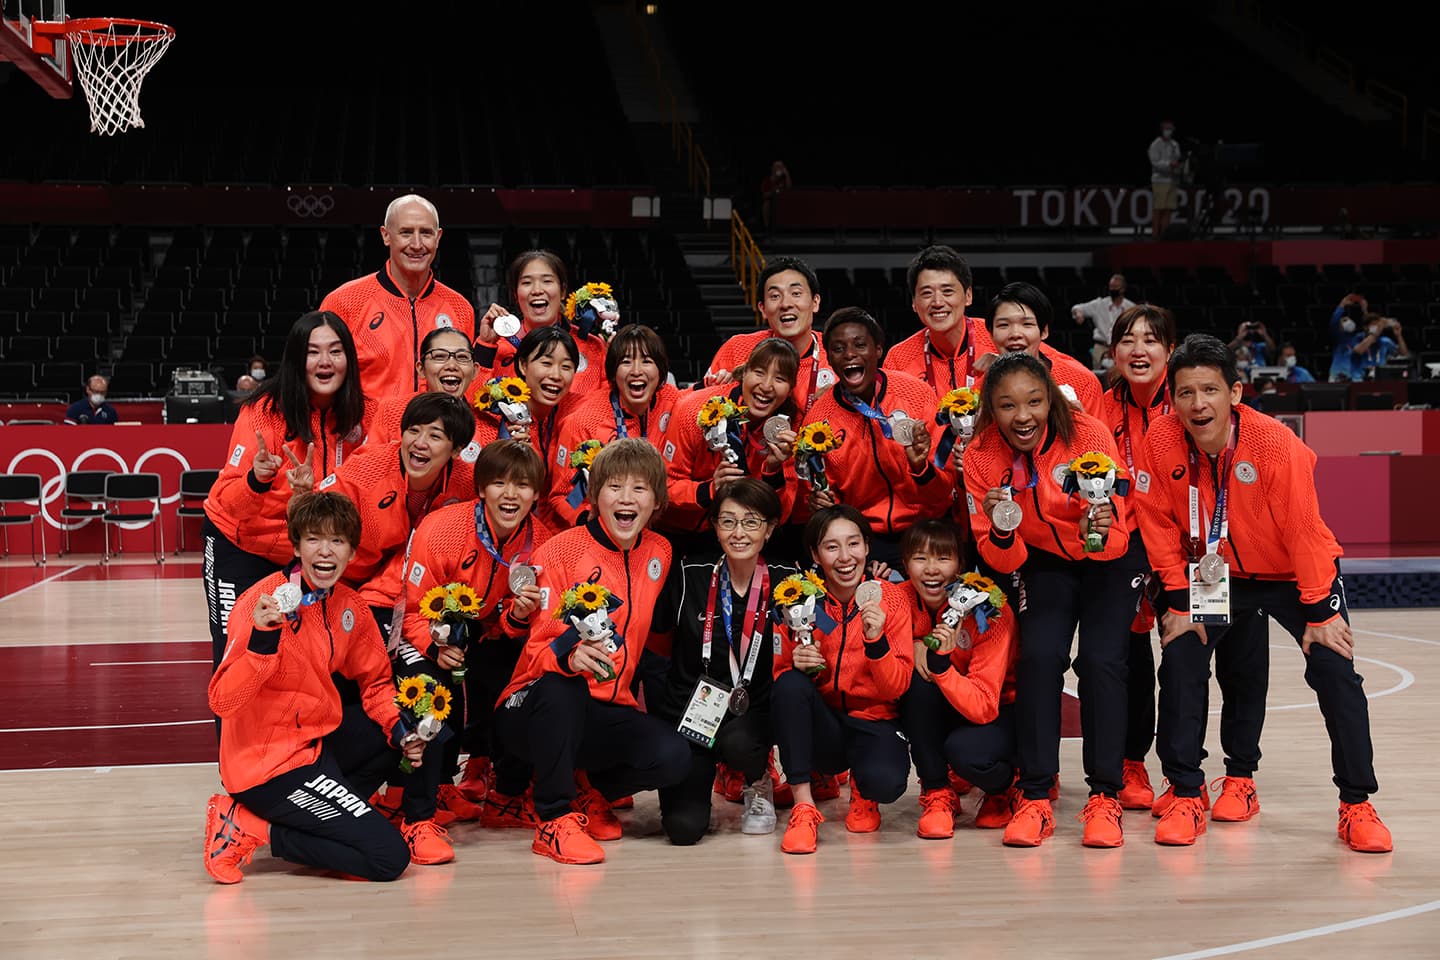 東京2020大会で銀メダルを獲得したバスケットボール女子チーム